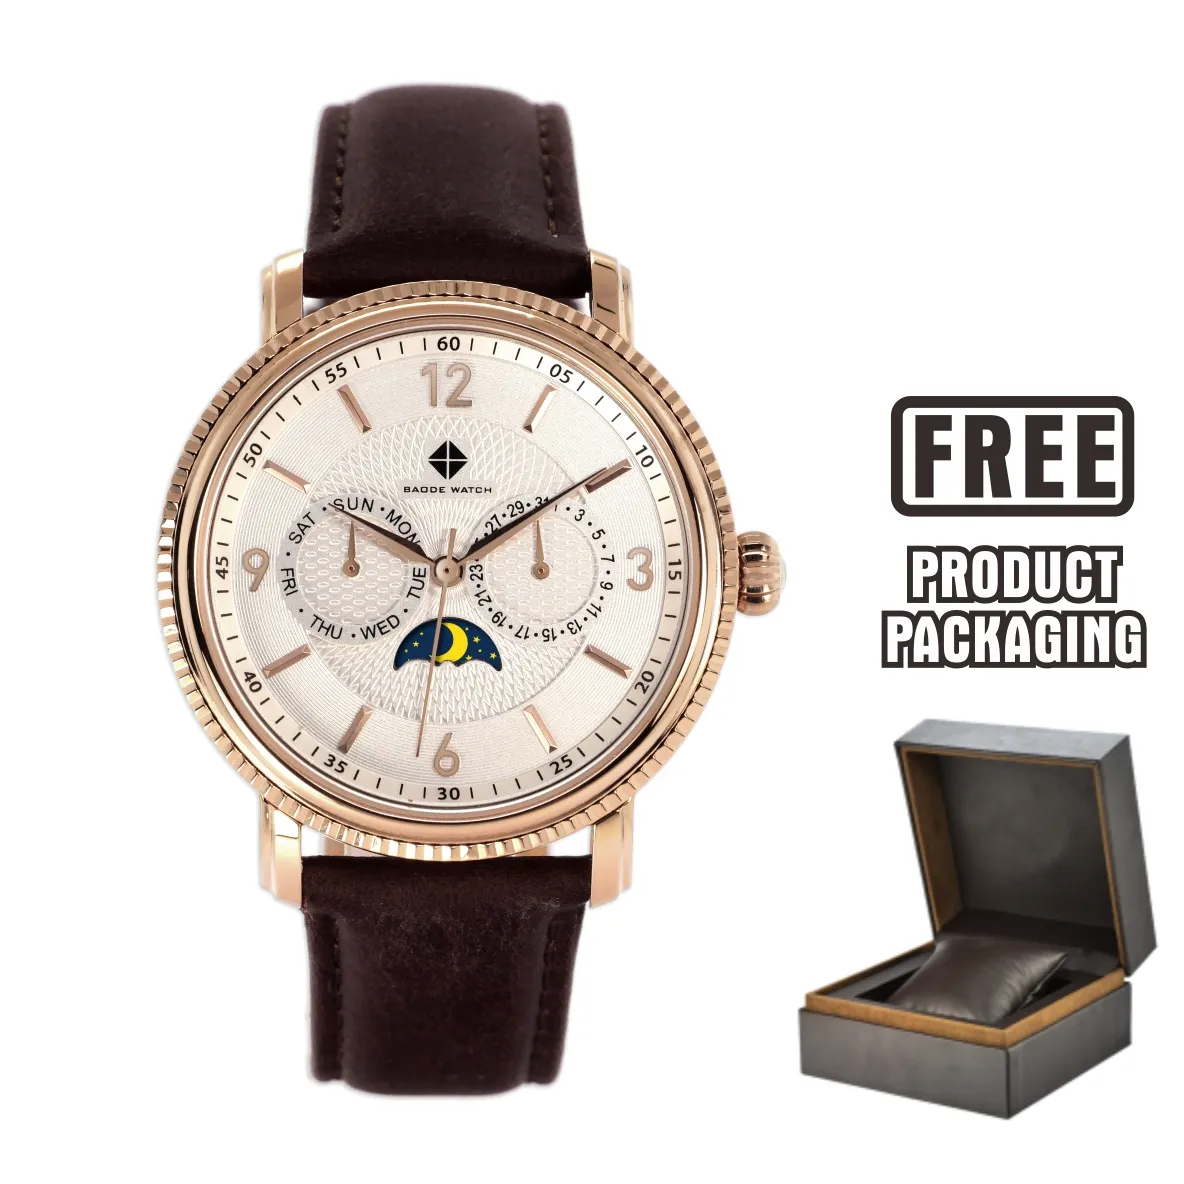 [Oxset]-Reloj de pulsera para hombre, accesorio disponible en color blanco, negro y azul